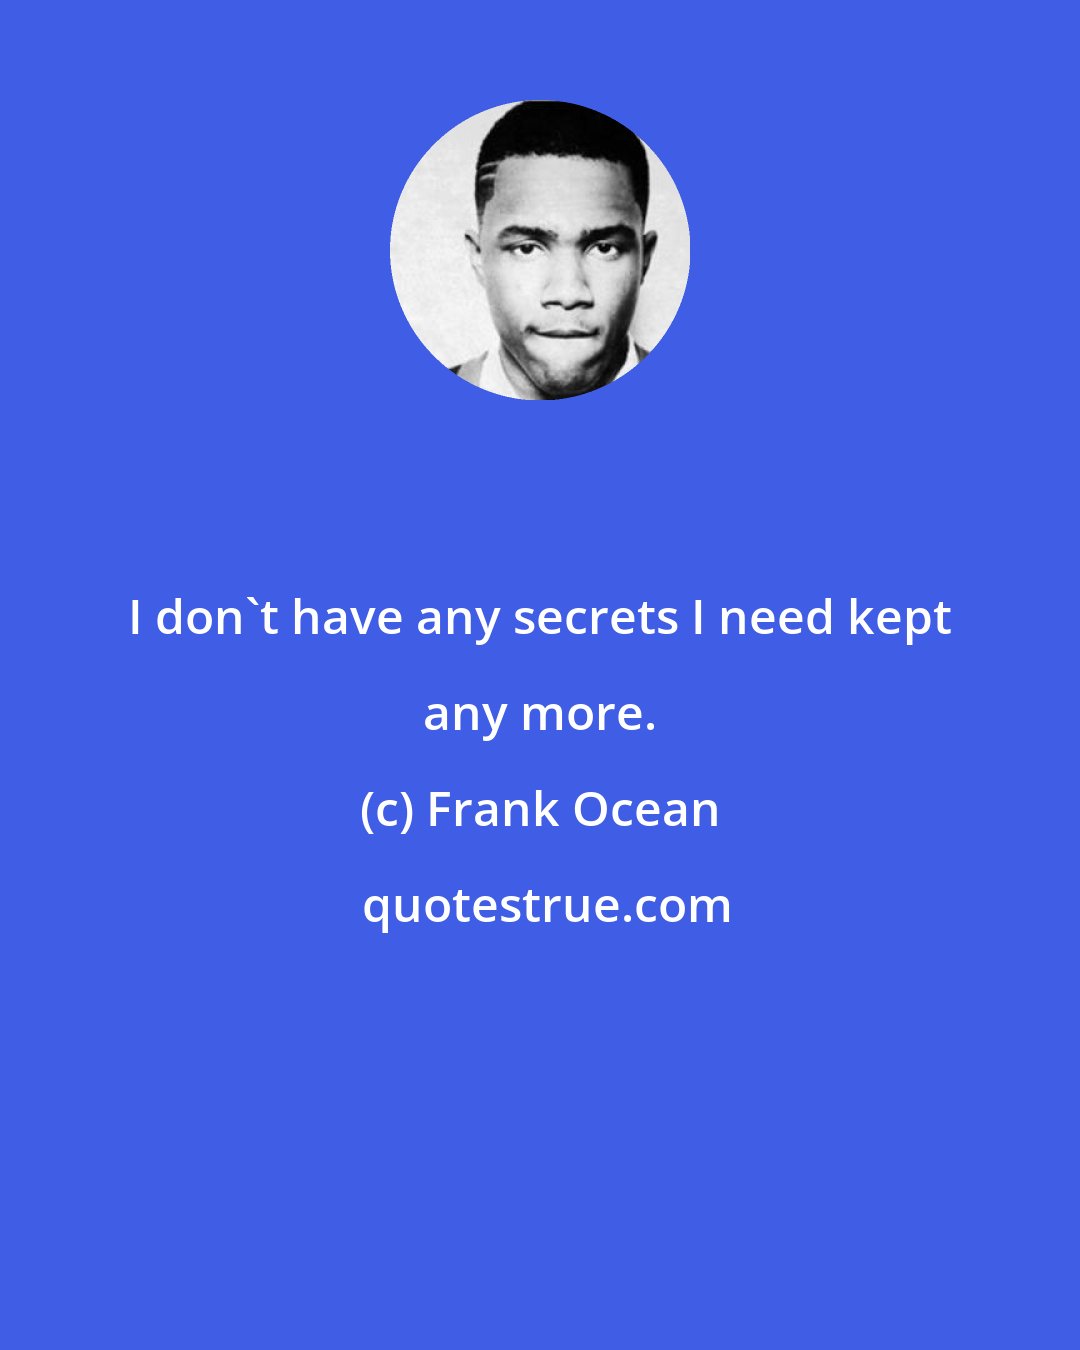 Frank Ocean: I don't have any secrets I need kept any more.